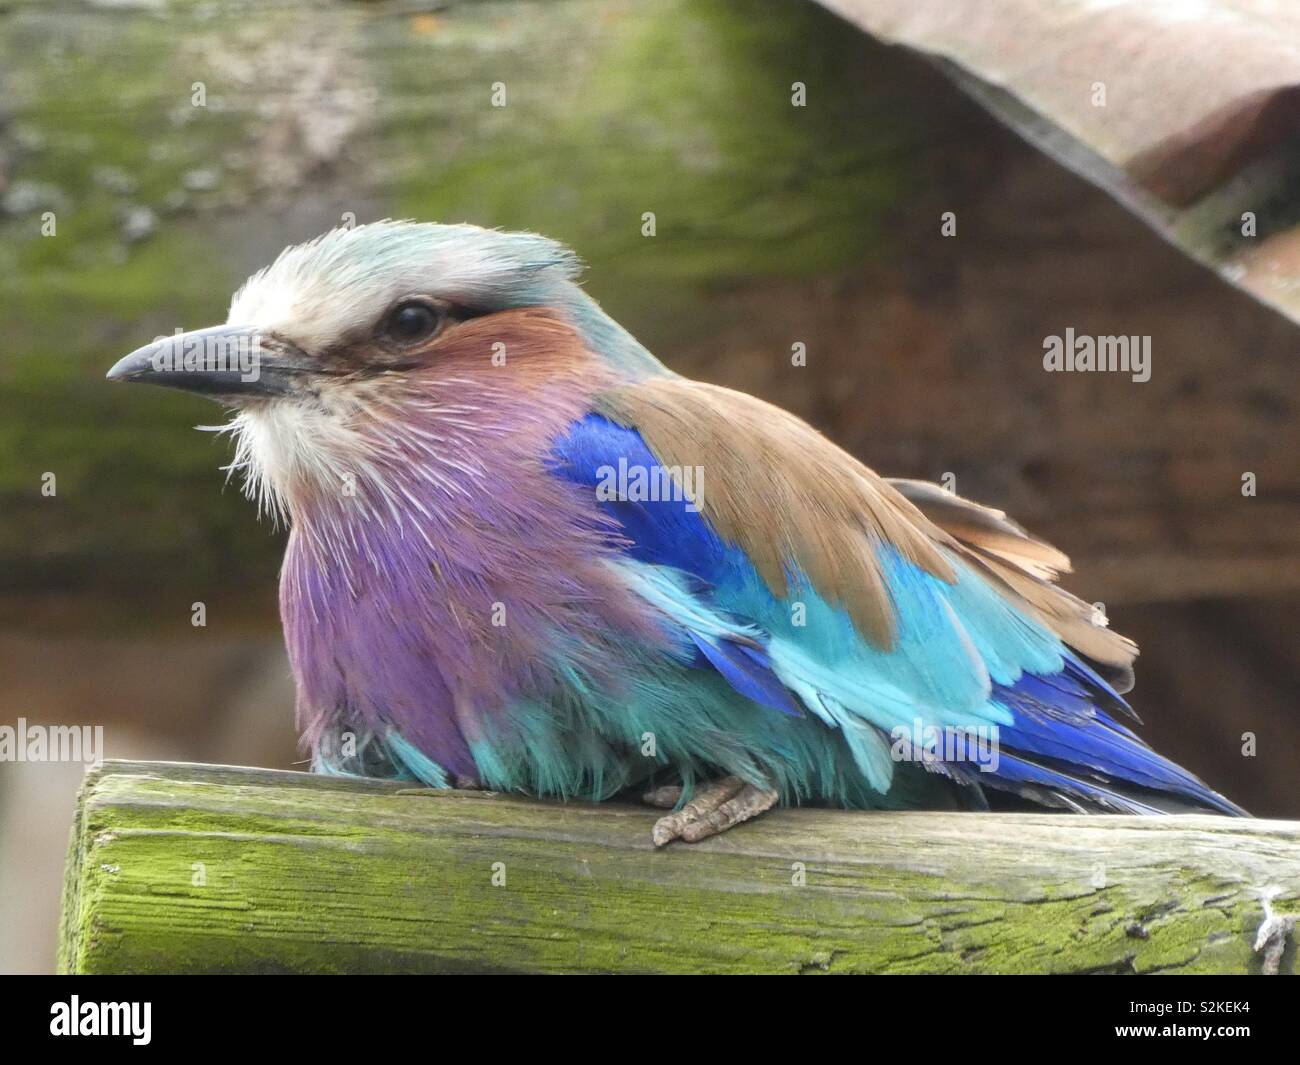 A colourful bird Stock Photo